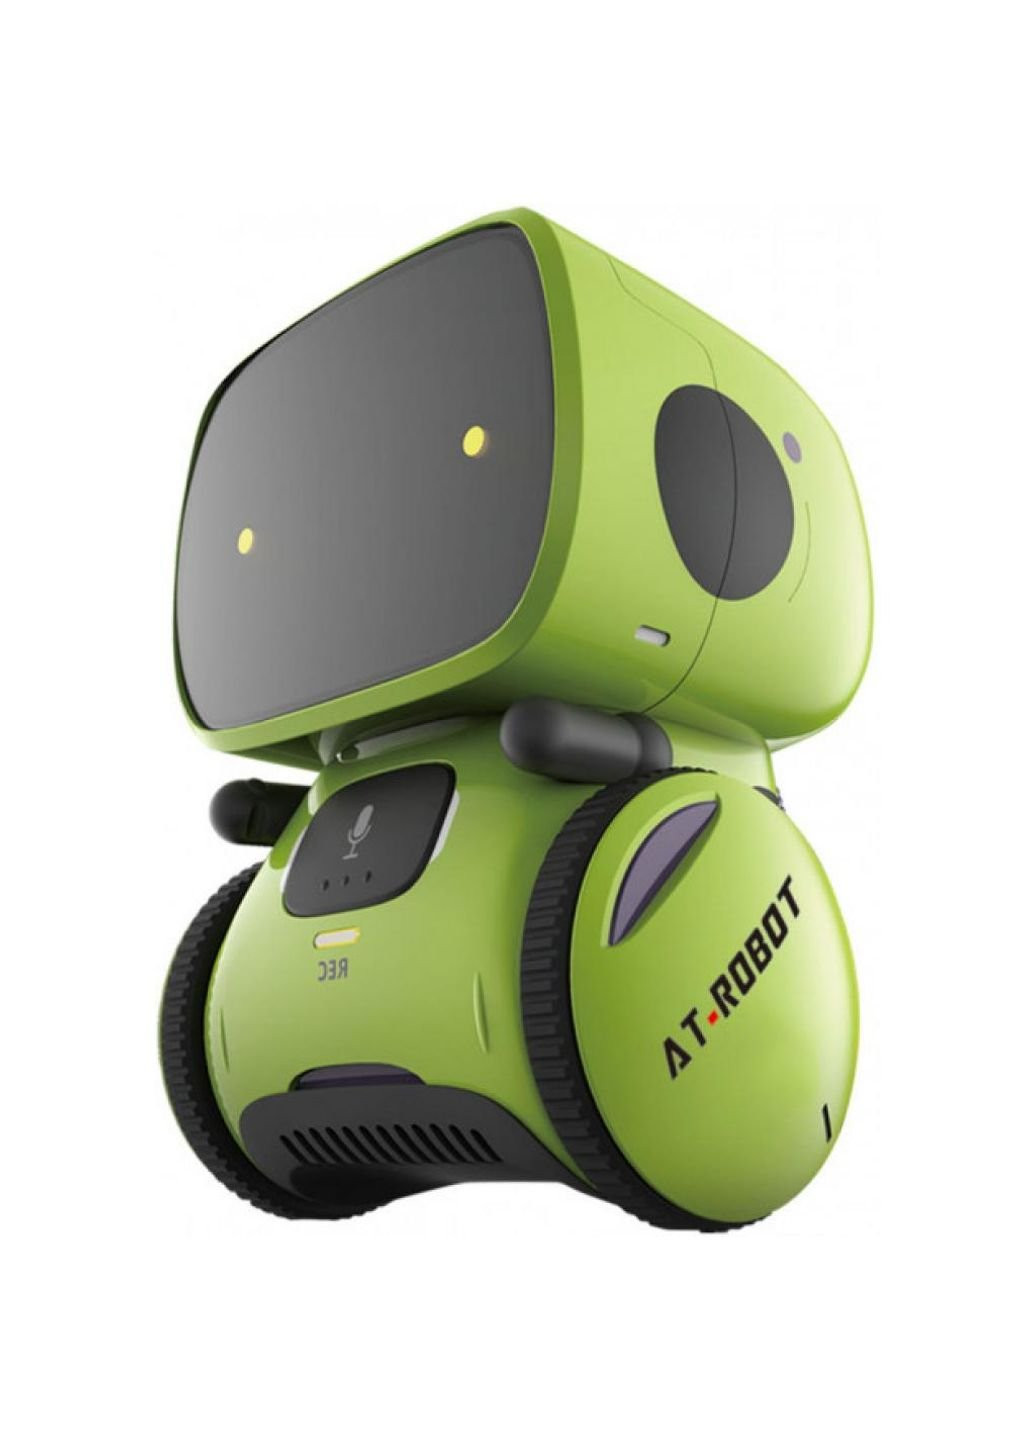 Інтерактивний робот іграшковий робот з голосовим контролем Green, UKR (AT001-02-UKR) AT-Robot (252147982)